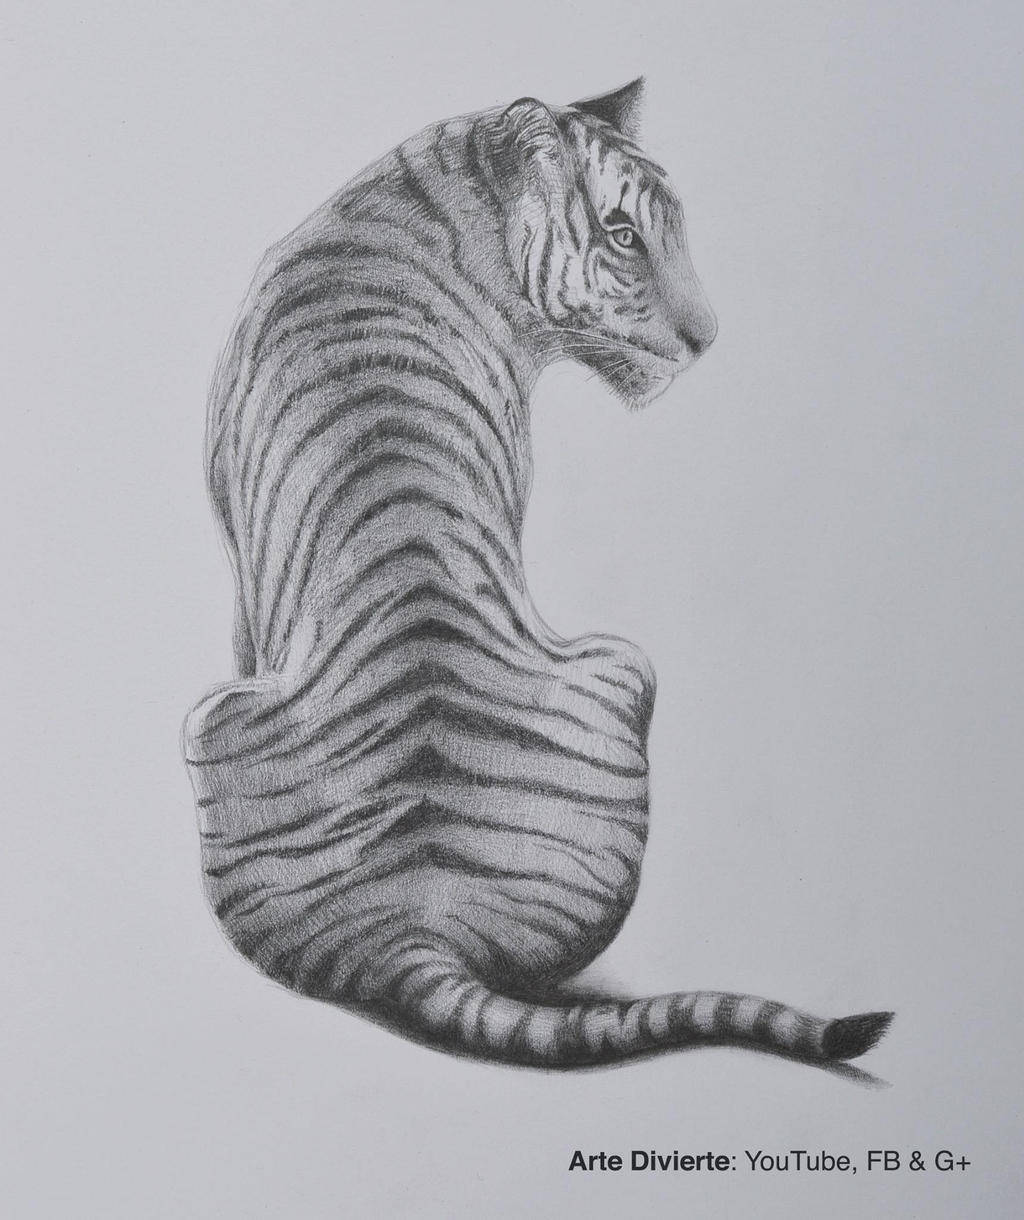 Como dibujar un tigre a lapiz by LeonardoPereznieto on DeviantArt